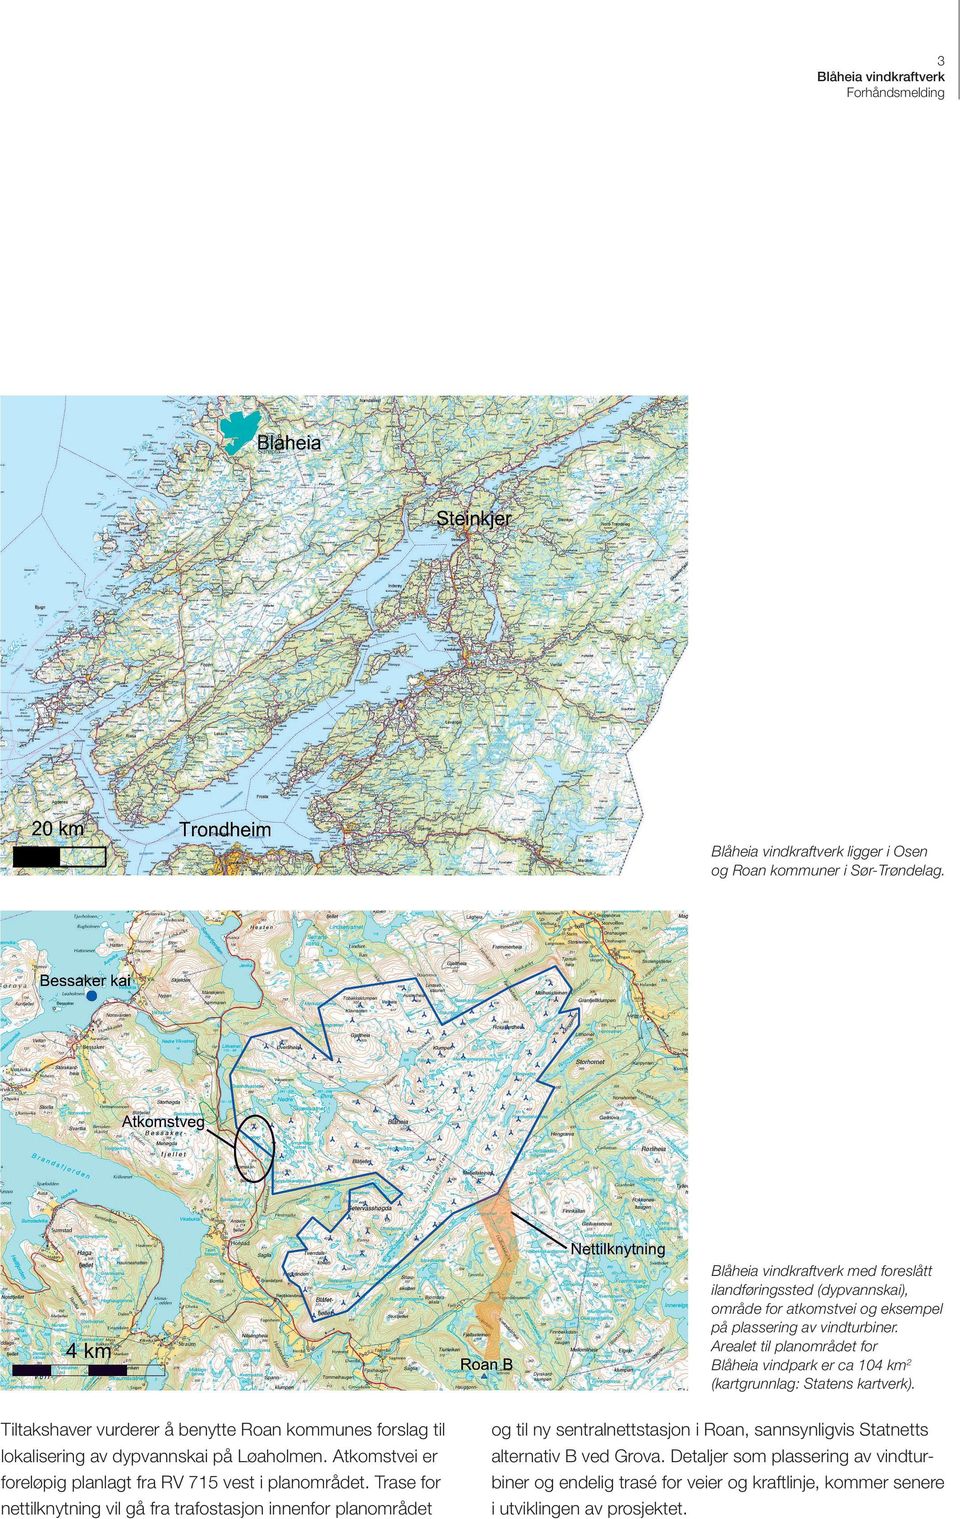 Tiltakshaver vurderer å benytte Roan kommunes forslag til lokalisering av dypvannskai på Løaholmen. Atkomstvei er foreløpig planlagt fra RV 715 vest i planområdet.